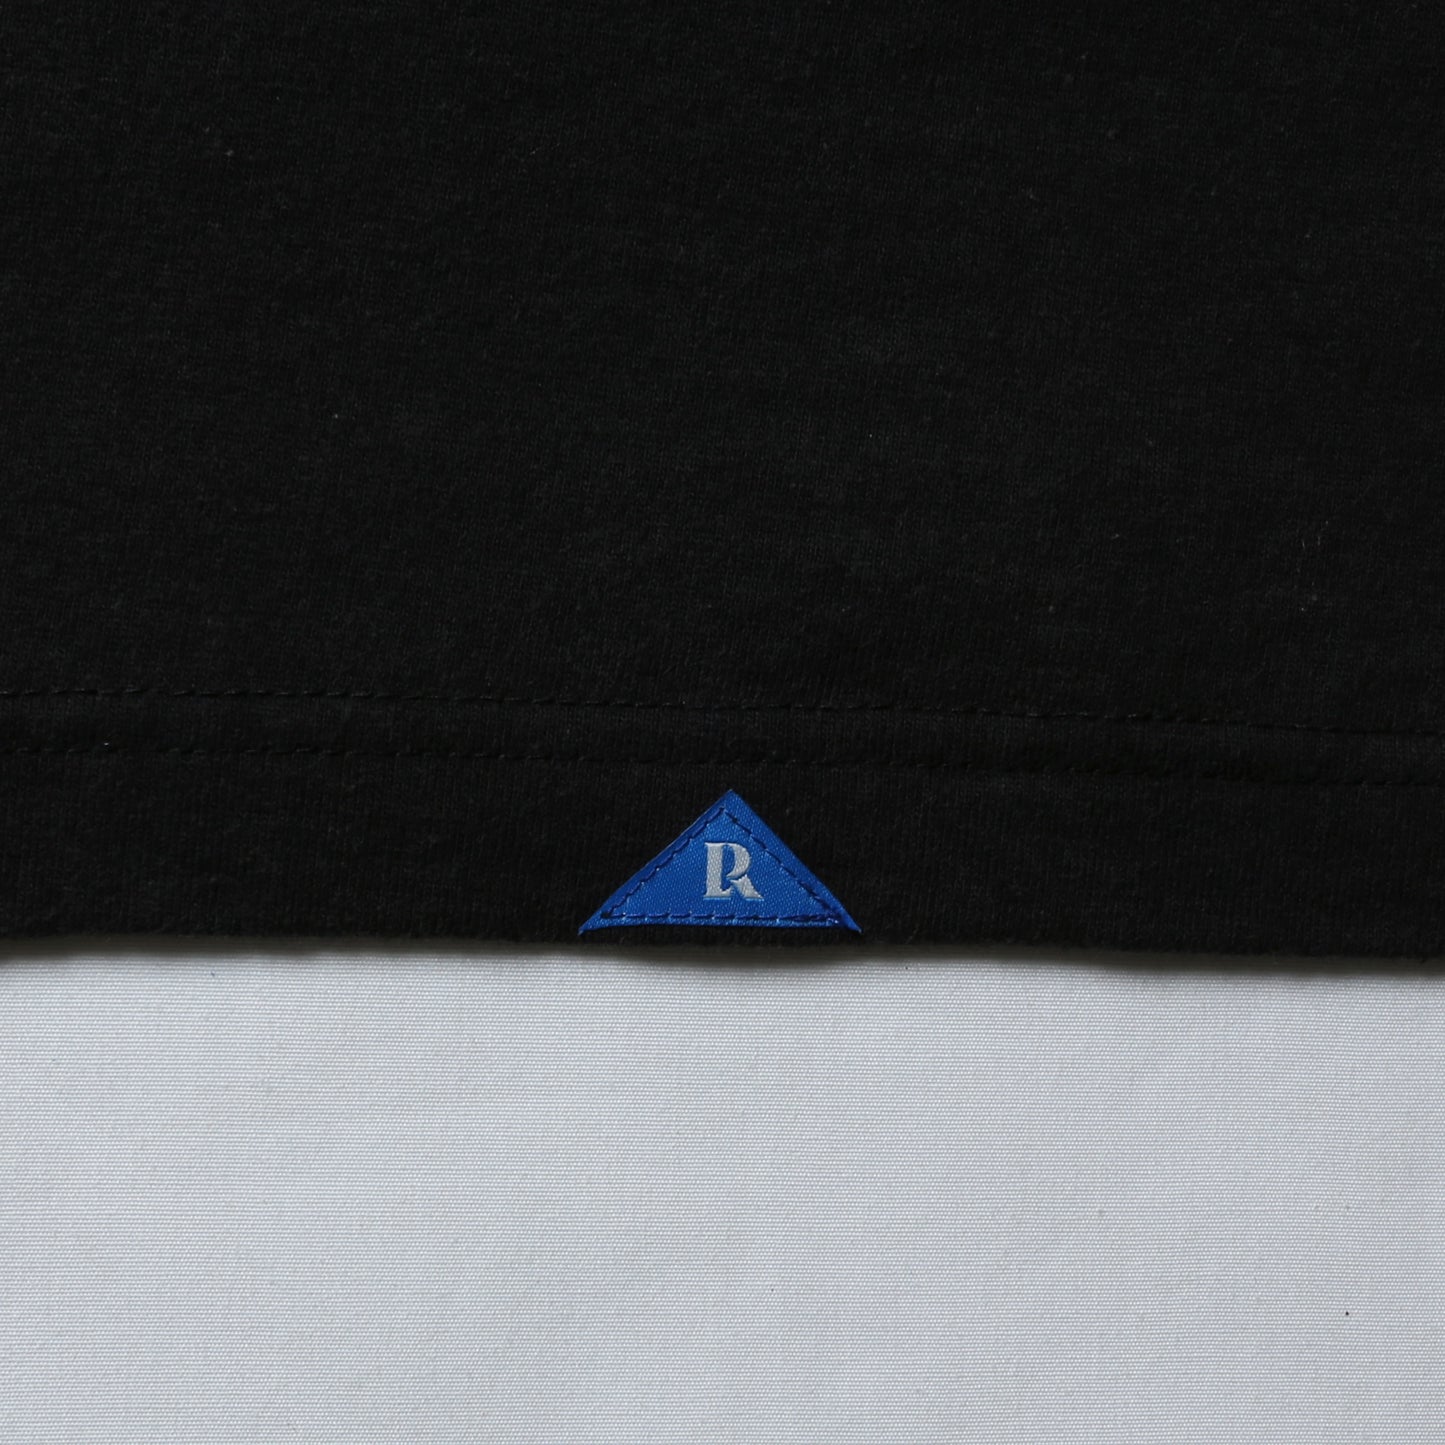 Liberaiders リベレイダース SECRET TEE シークレット Tシャツ 70615 ブラック